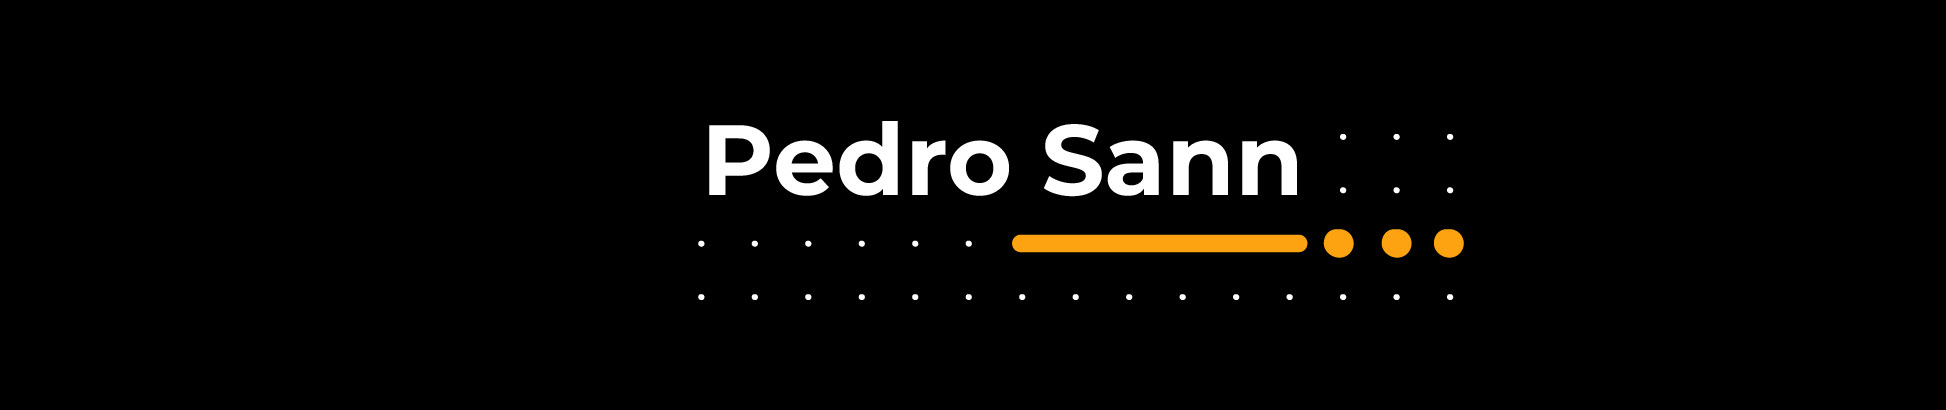 Pedro Sanns profilbanner